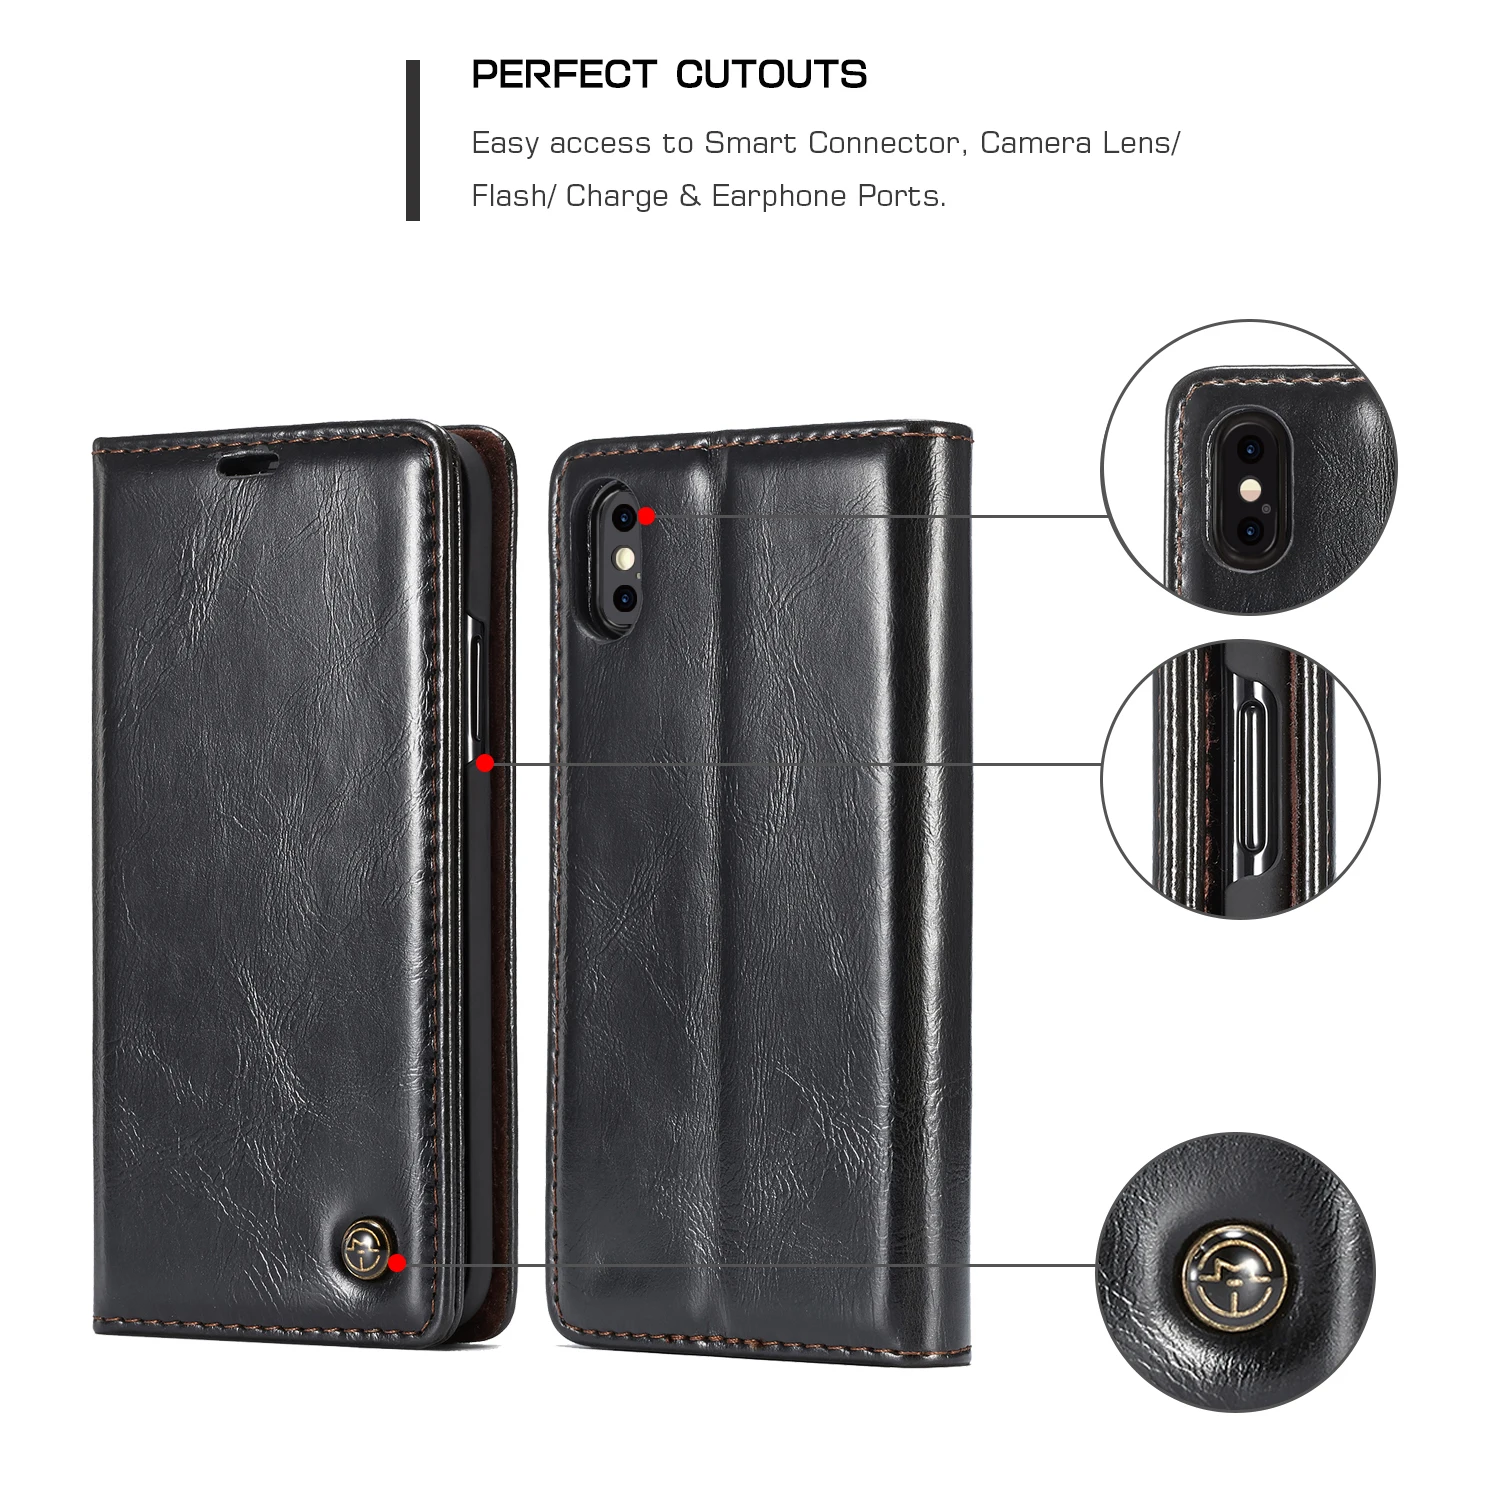 Чехол-кошелек из натуральной кожи для телефона Xiao mi 5 mi 8 mi 8 5 Red mi 6 6A Pro Чехол для Note 6 Pro 6Pro 3 Note3 чехлы